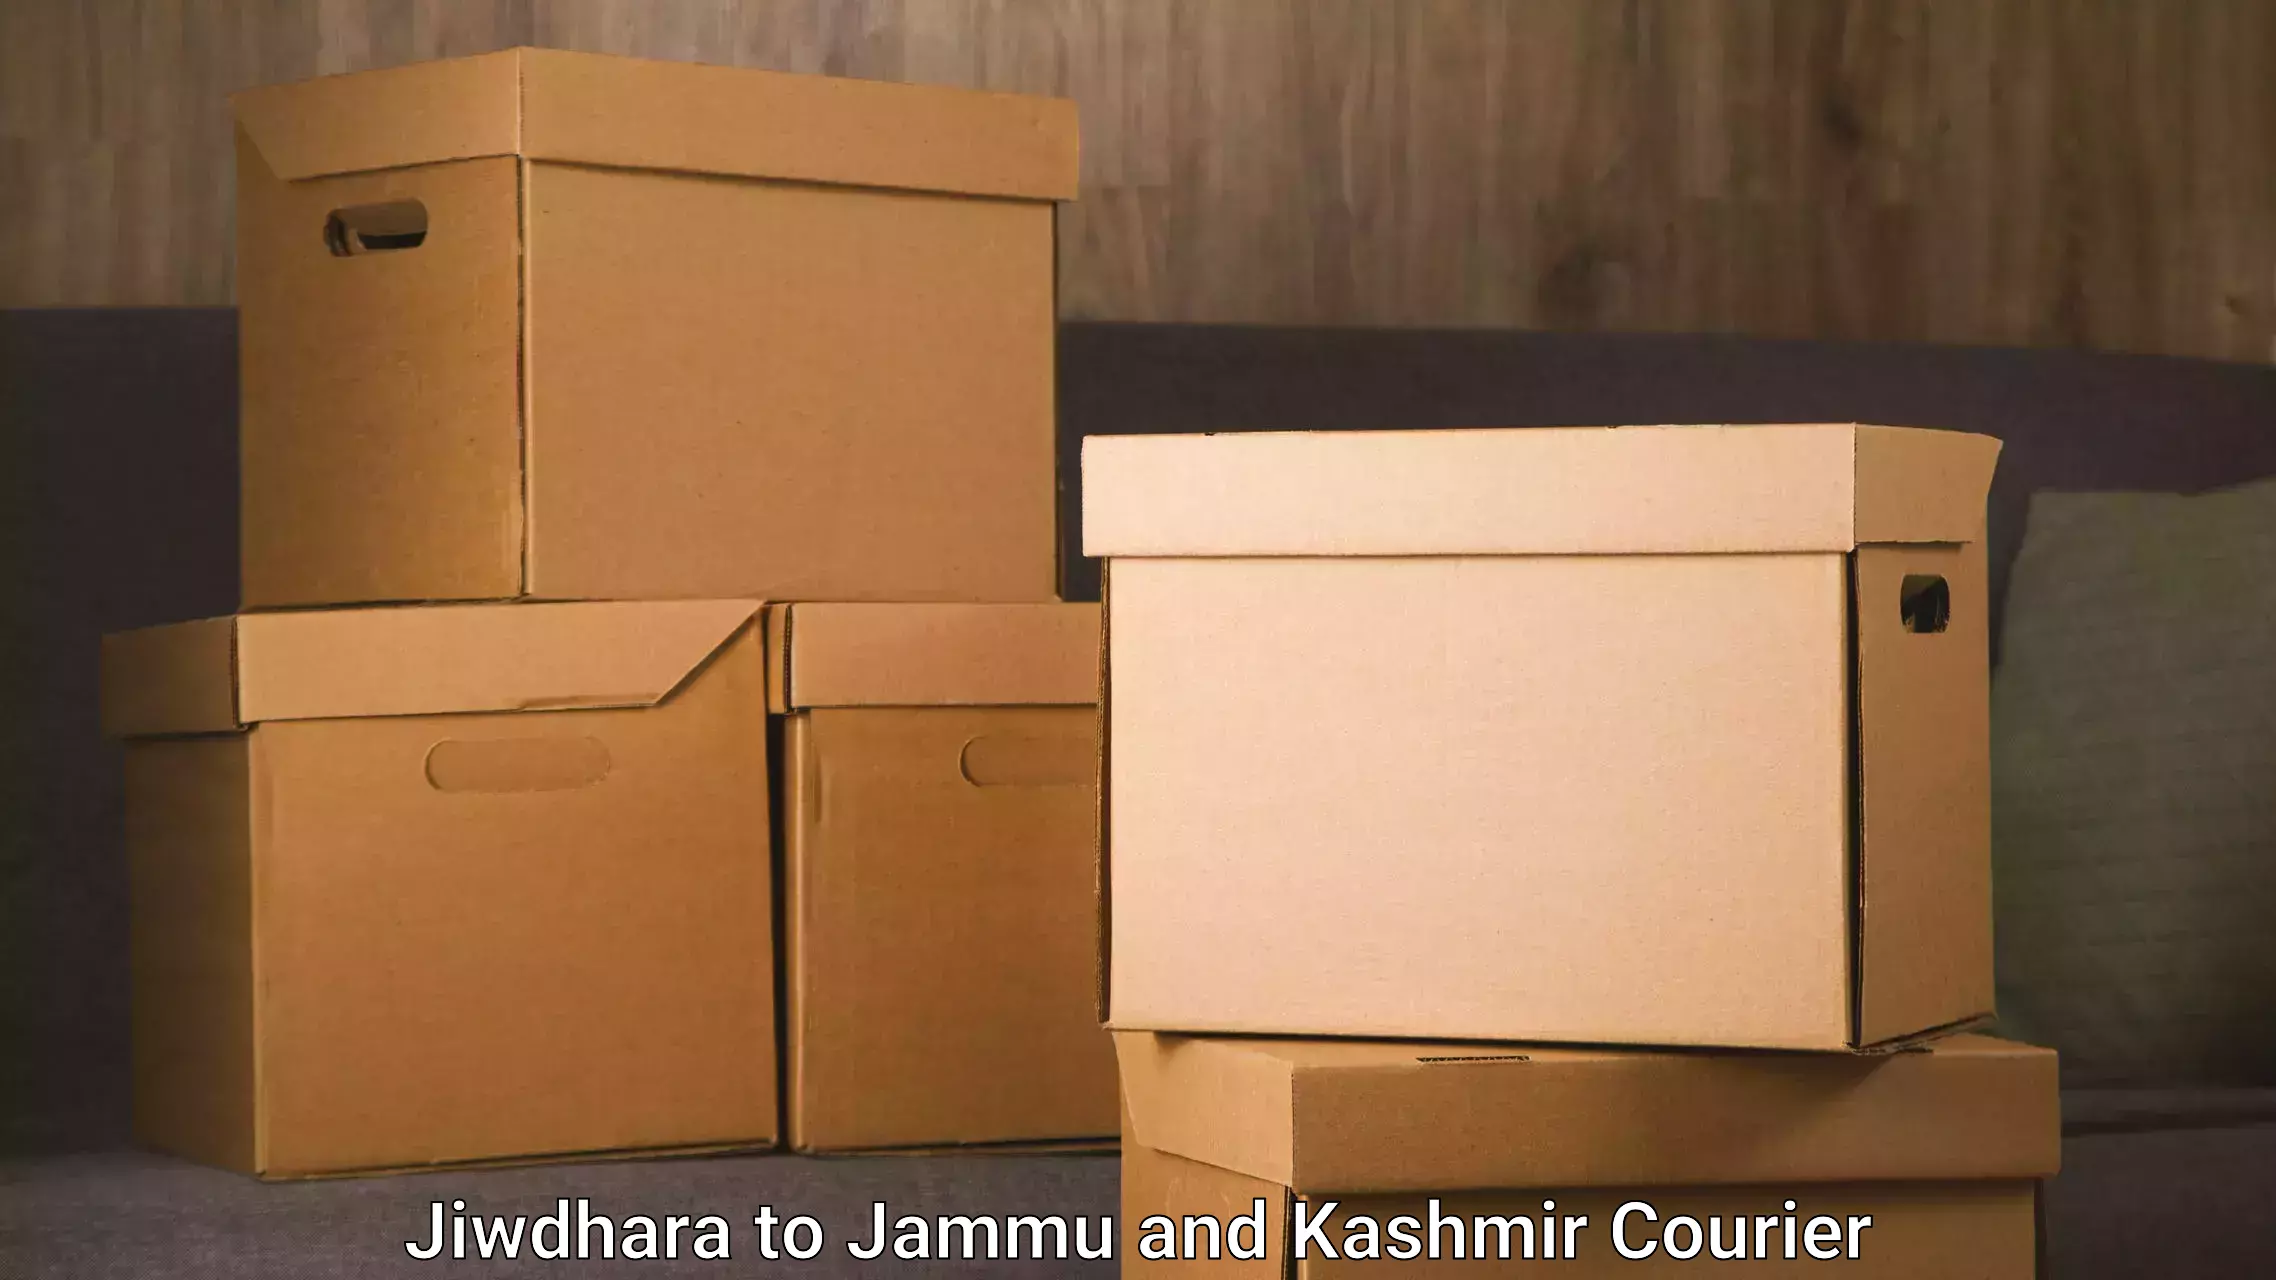 Furniture transport company Jiwdhara to Anantnag